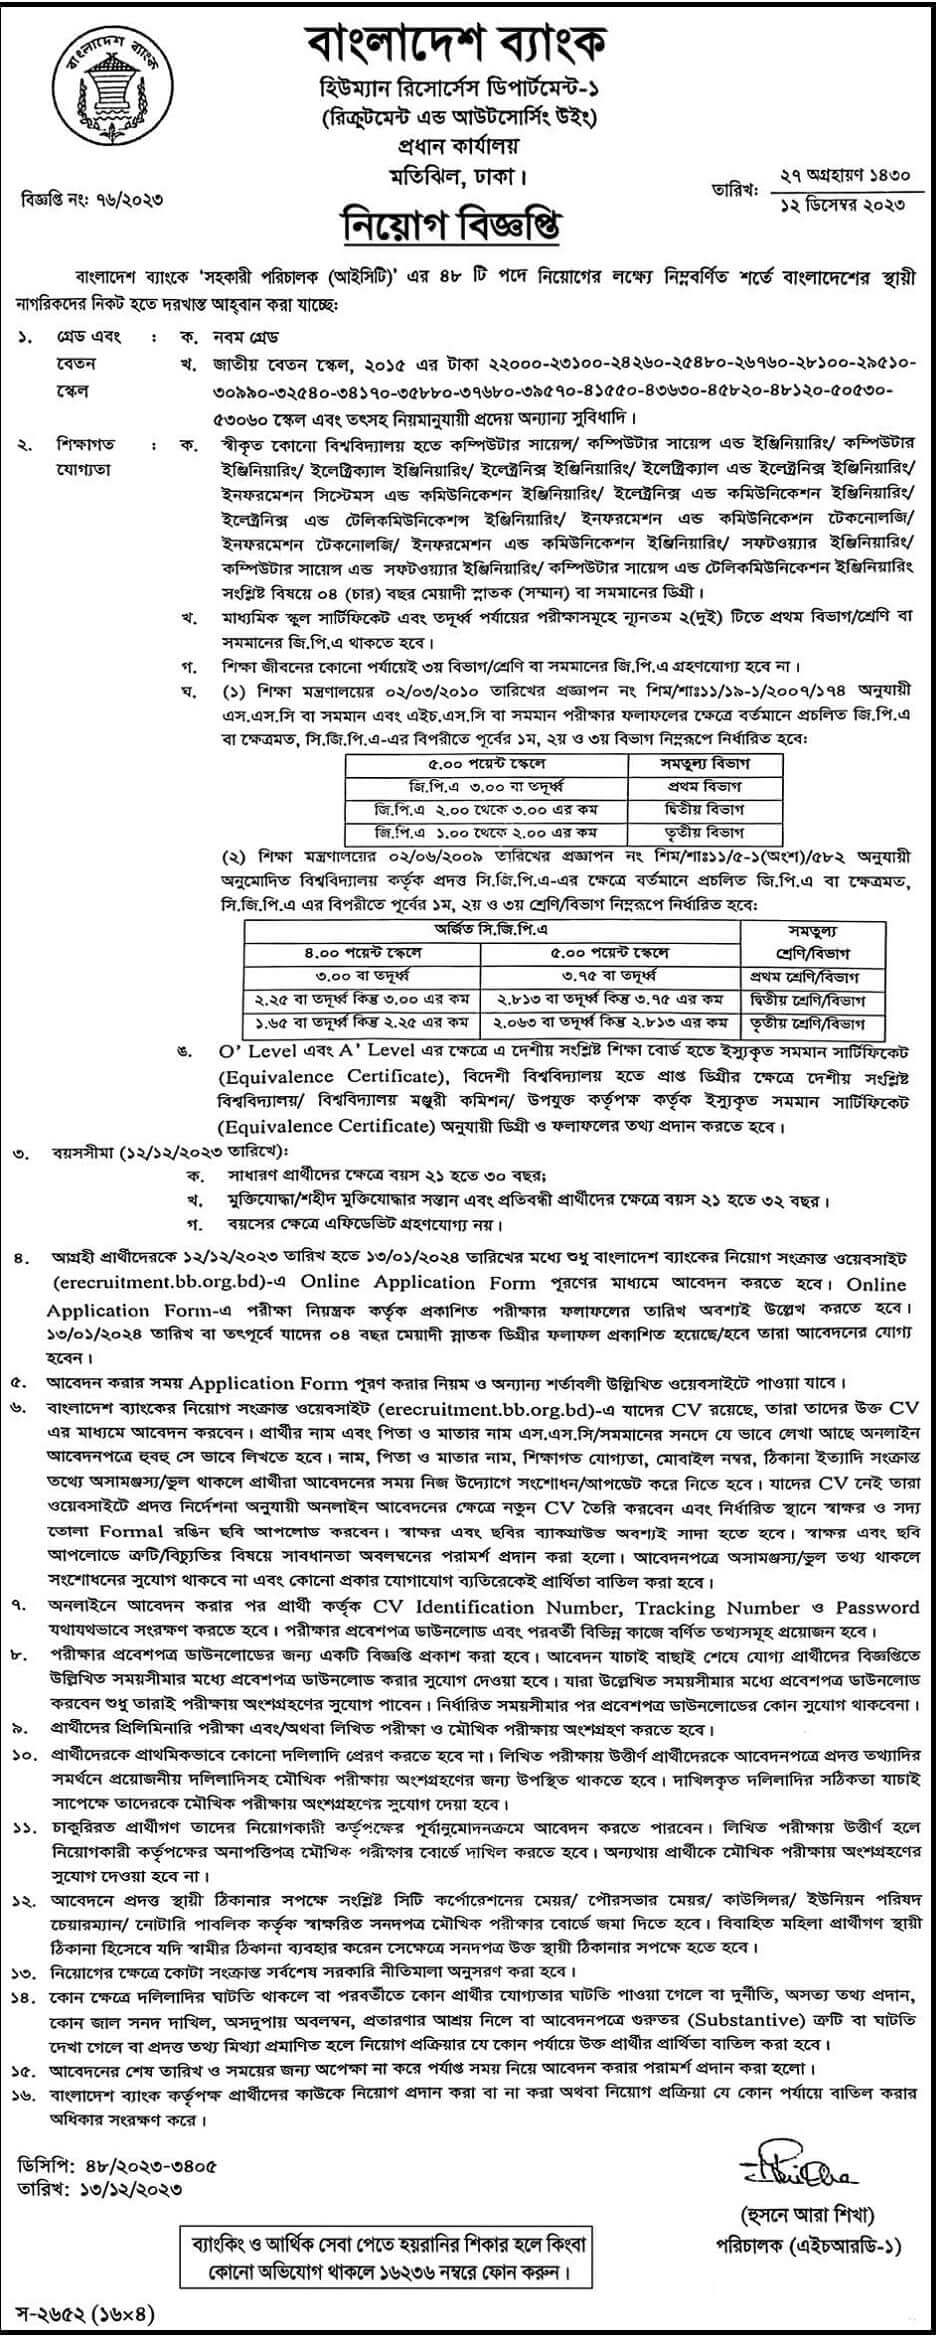 Bangladesh Bank Job Notice